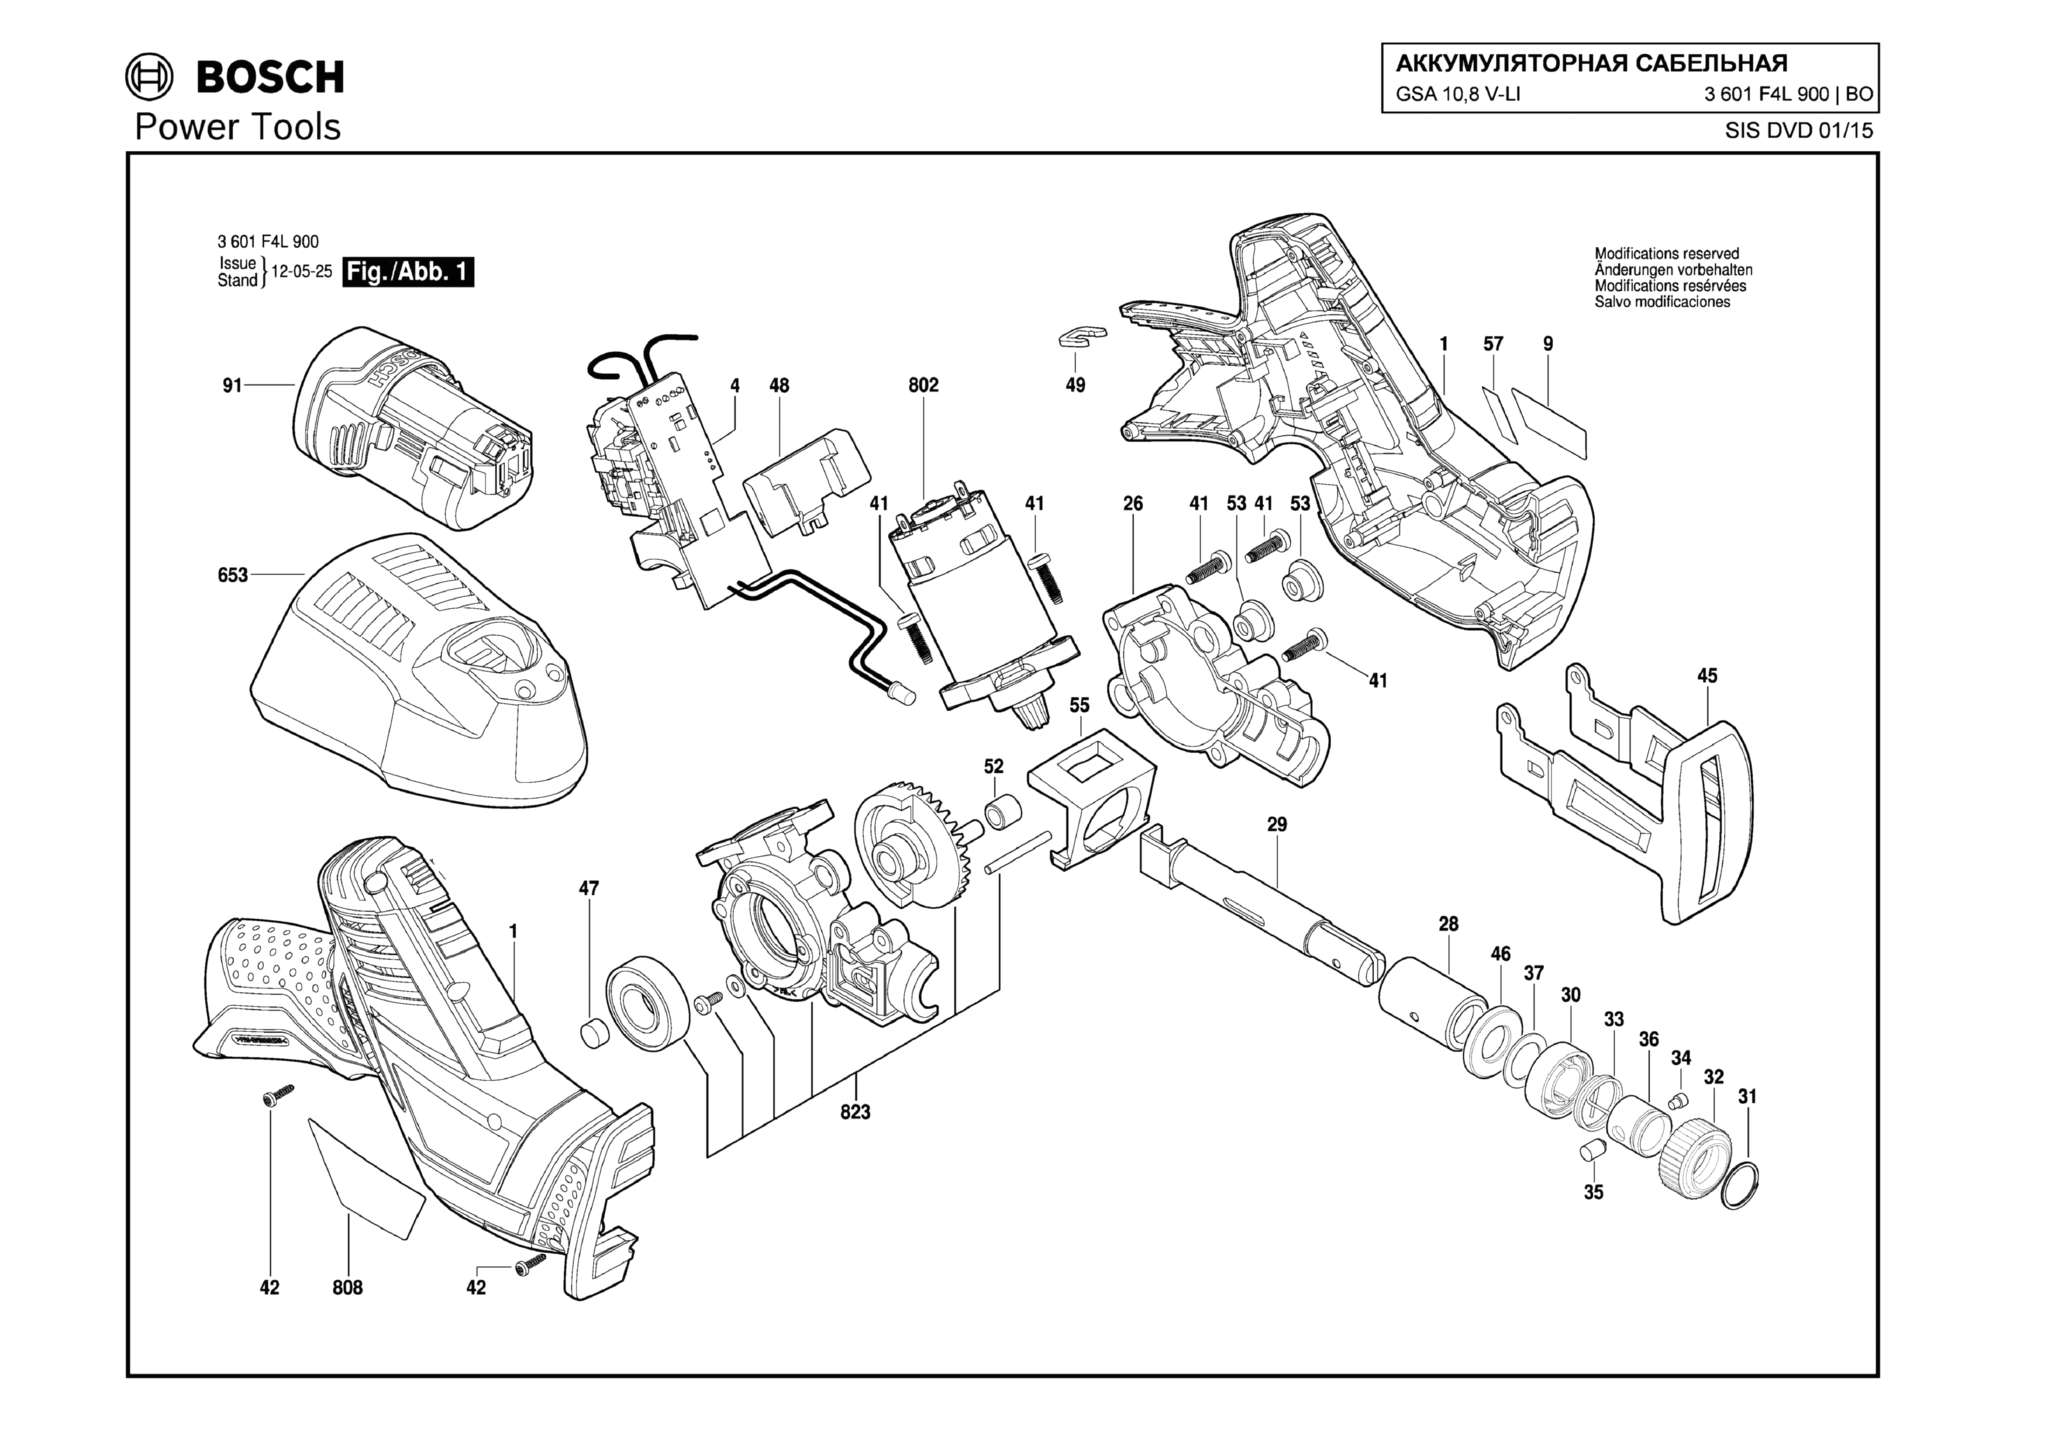 Запчасти, схема и деталировка Bosch GSA 10,8 V-LI (ТИП 3601F4L900)